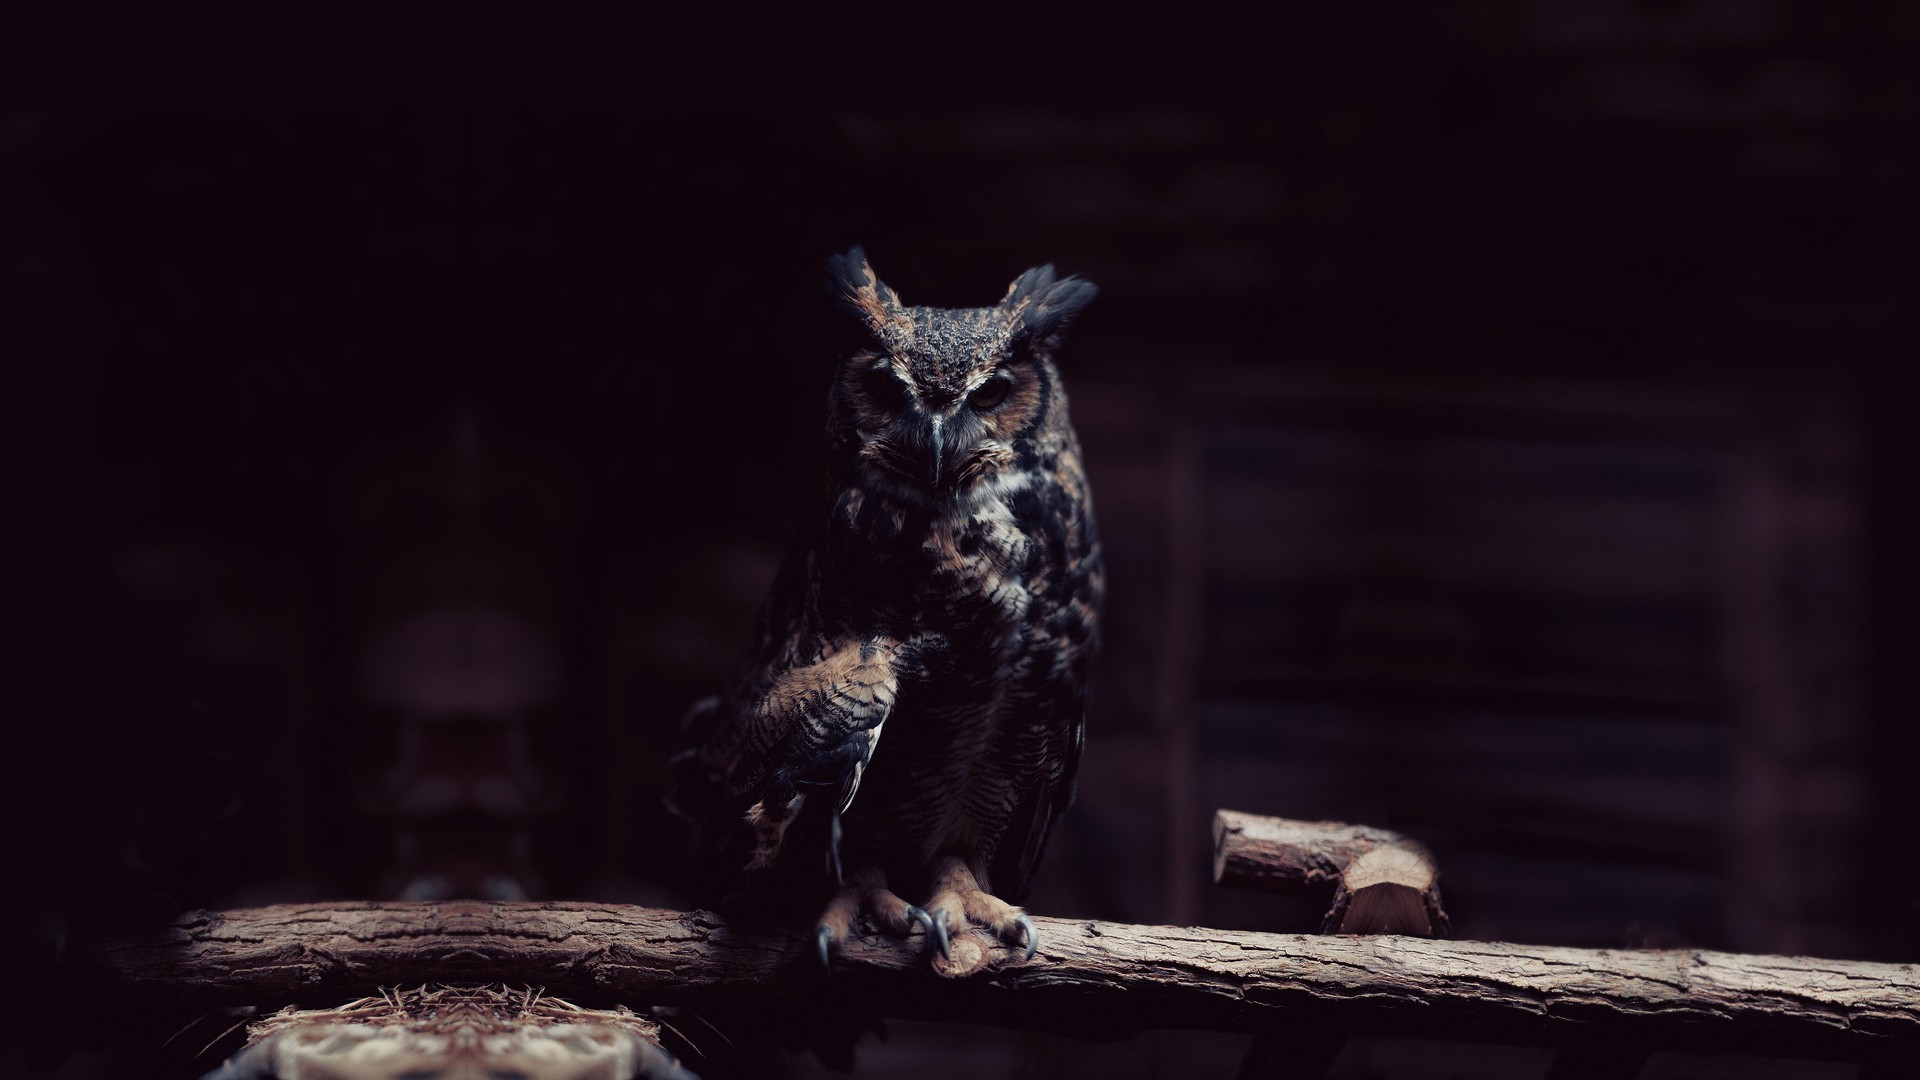 1920x1080 ... dark owl birds wallpapers hd desktop and mobile backgrounds ...